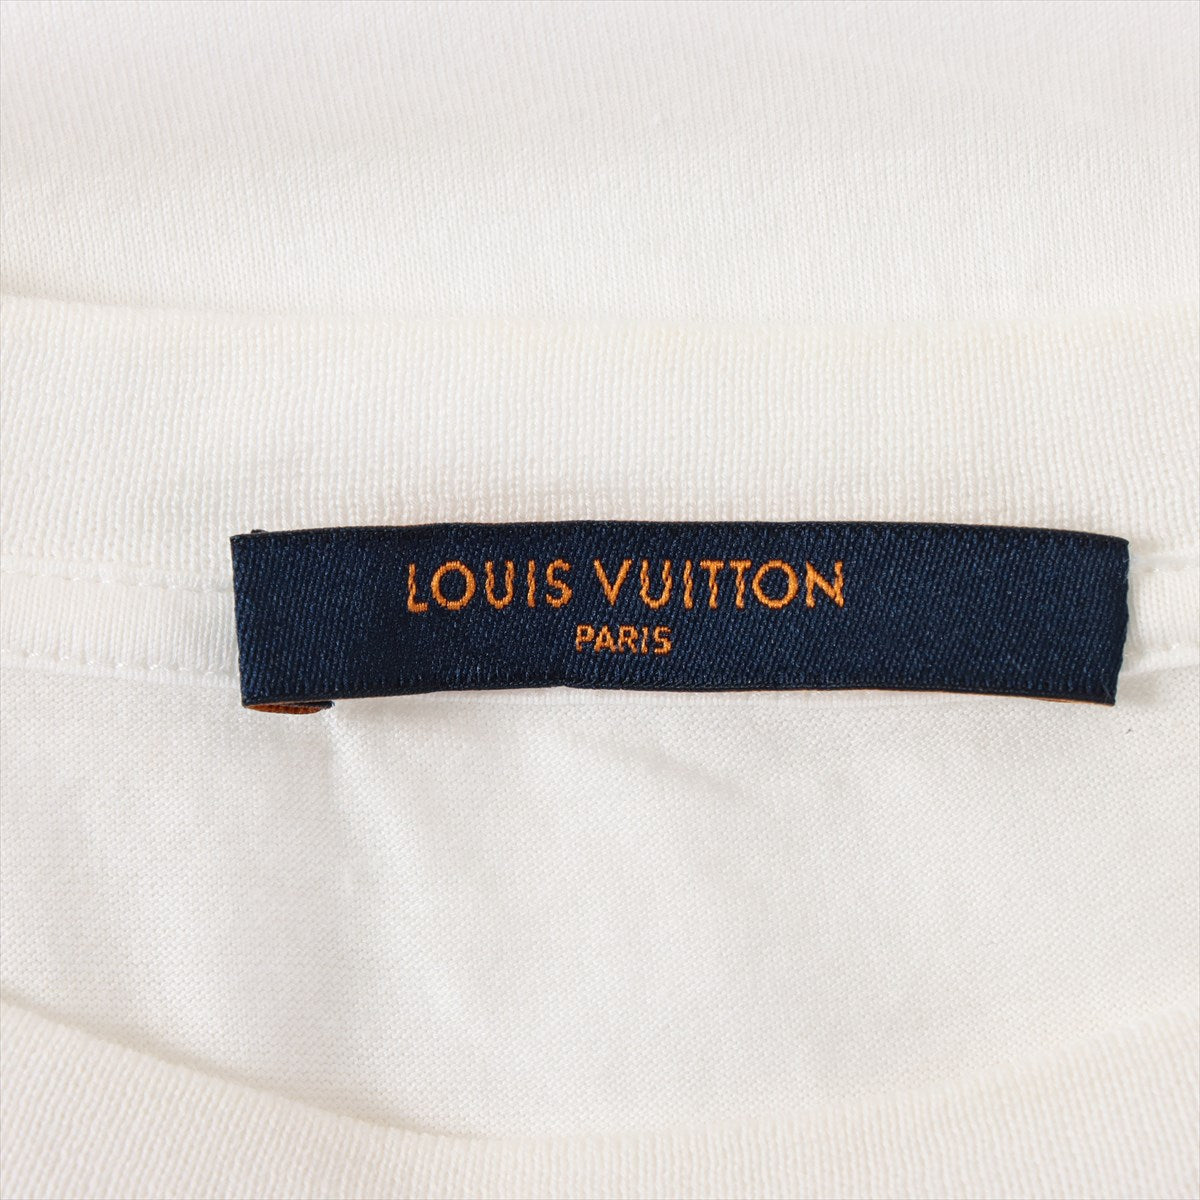 ルイヴィトン 18AW コットン Tシャツ XS メンズ ホワイト  クルーネック LVサークル RM182Q